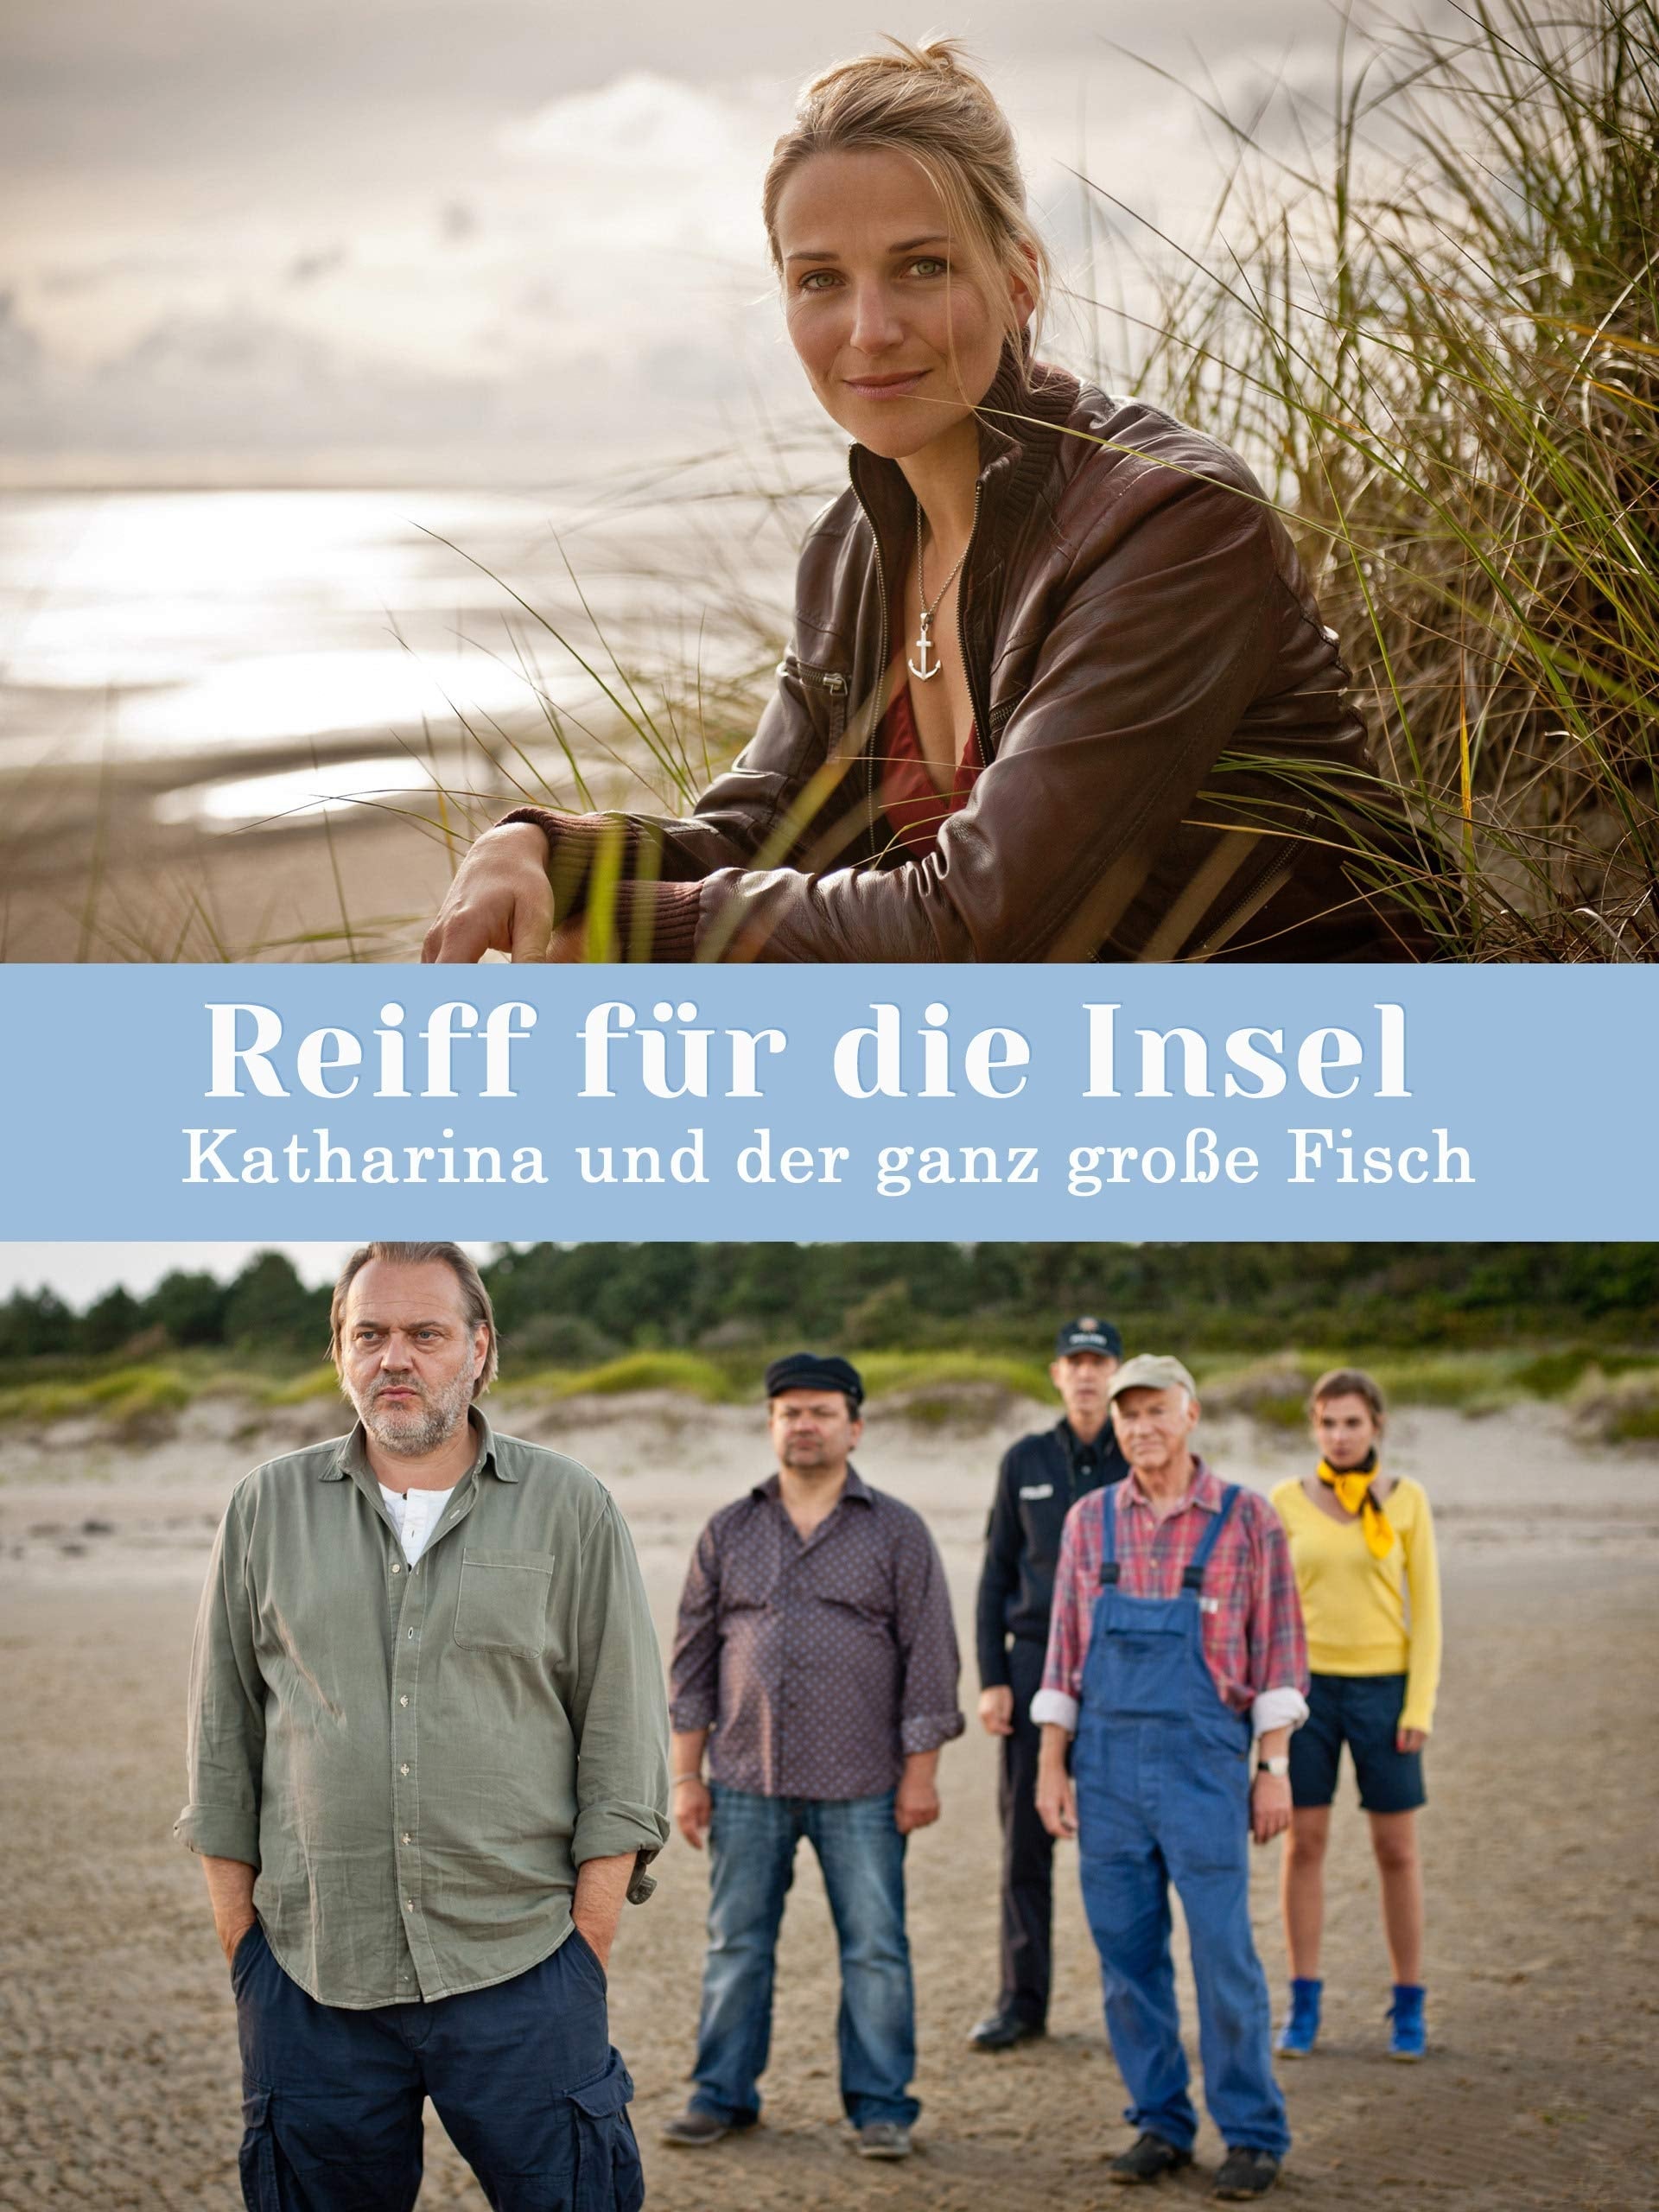 Reiff für die Insel - Katharina und der ganz große Fisch (2013)